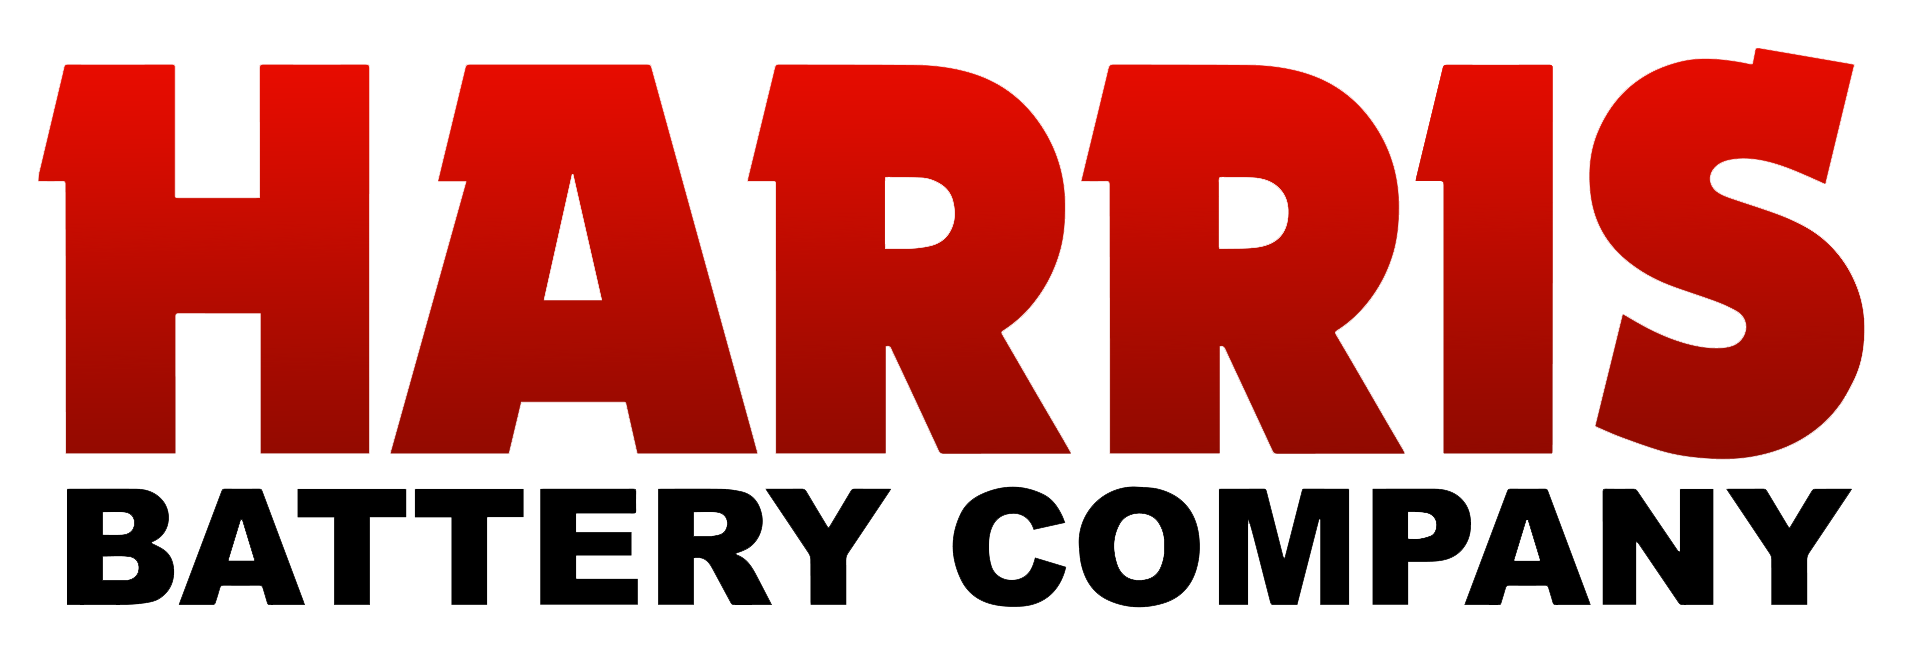 harris battery company logo